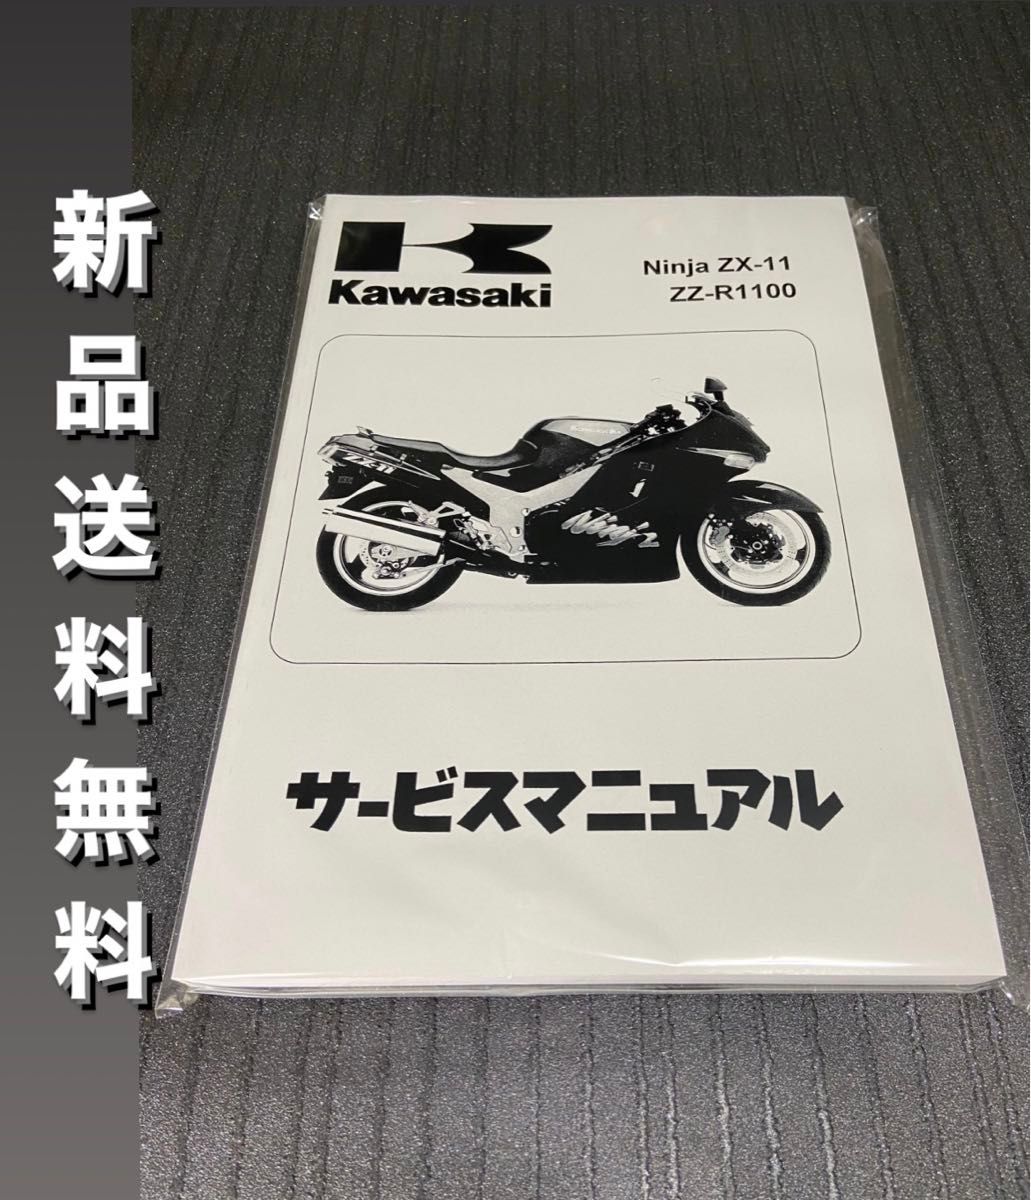 【新品】☆送料無料 ZZR1100☆サービスマニュアル 整備書 ZX-11 D型 Ninja 日本語版 KAWASAKI カワサキ